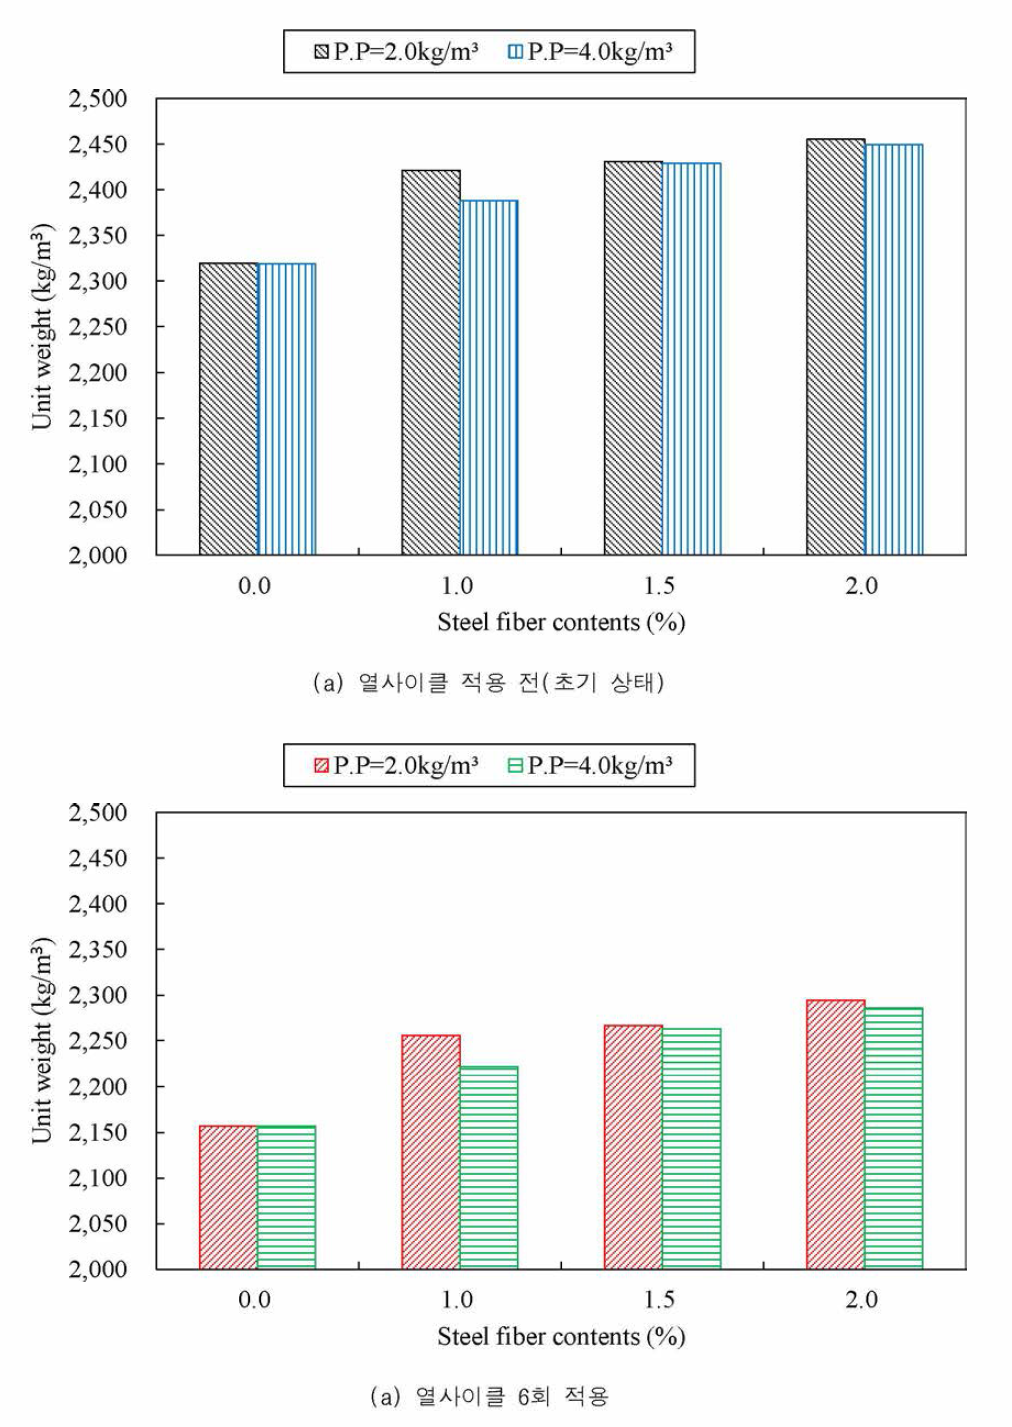 강섬유 혼입률별 P.P 섬유 혼입량에 따른 단위중량 결과 비교